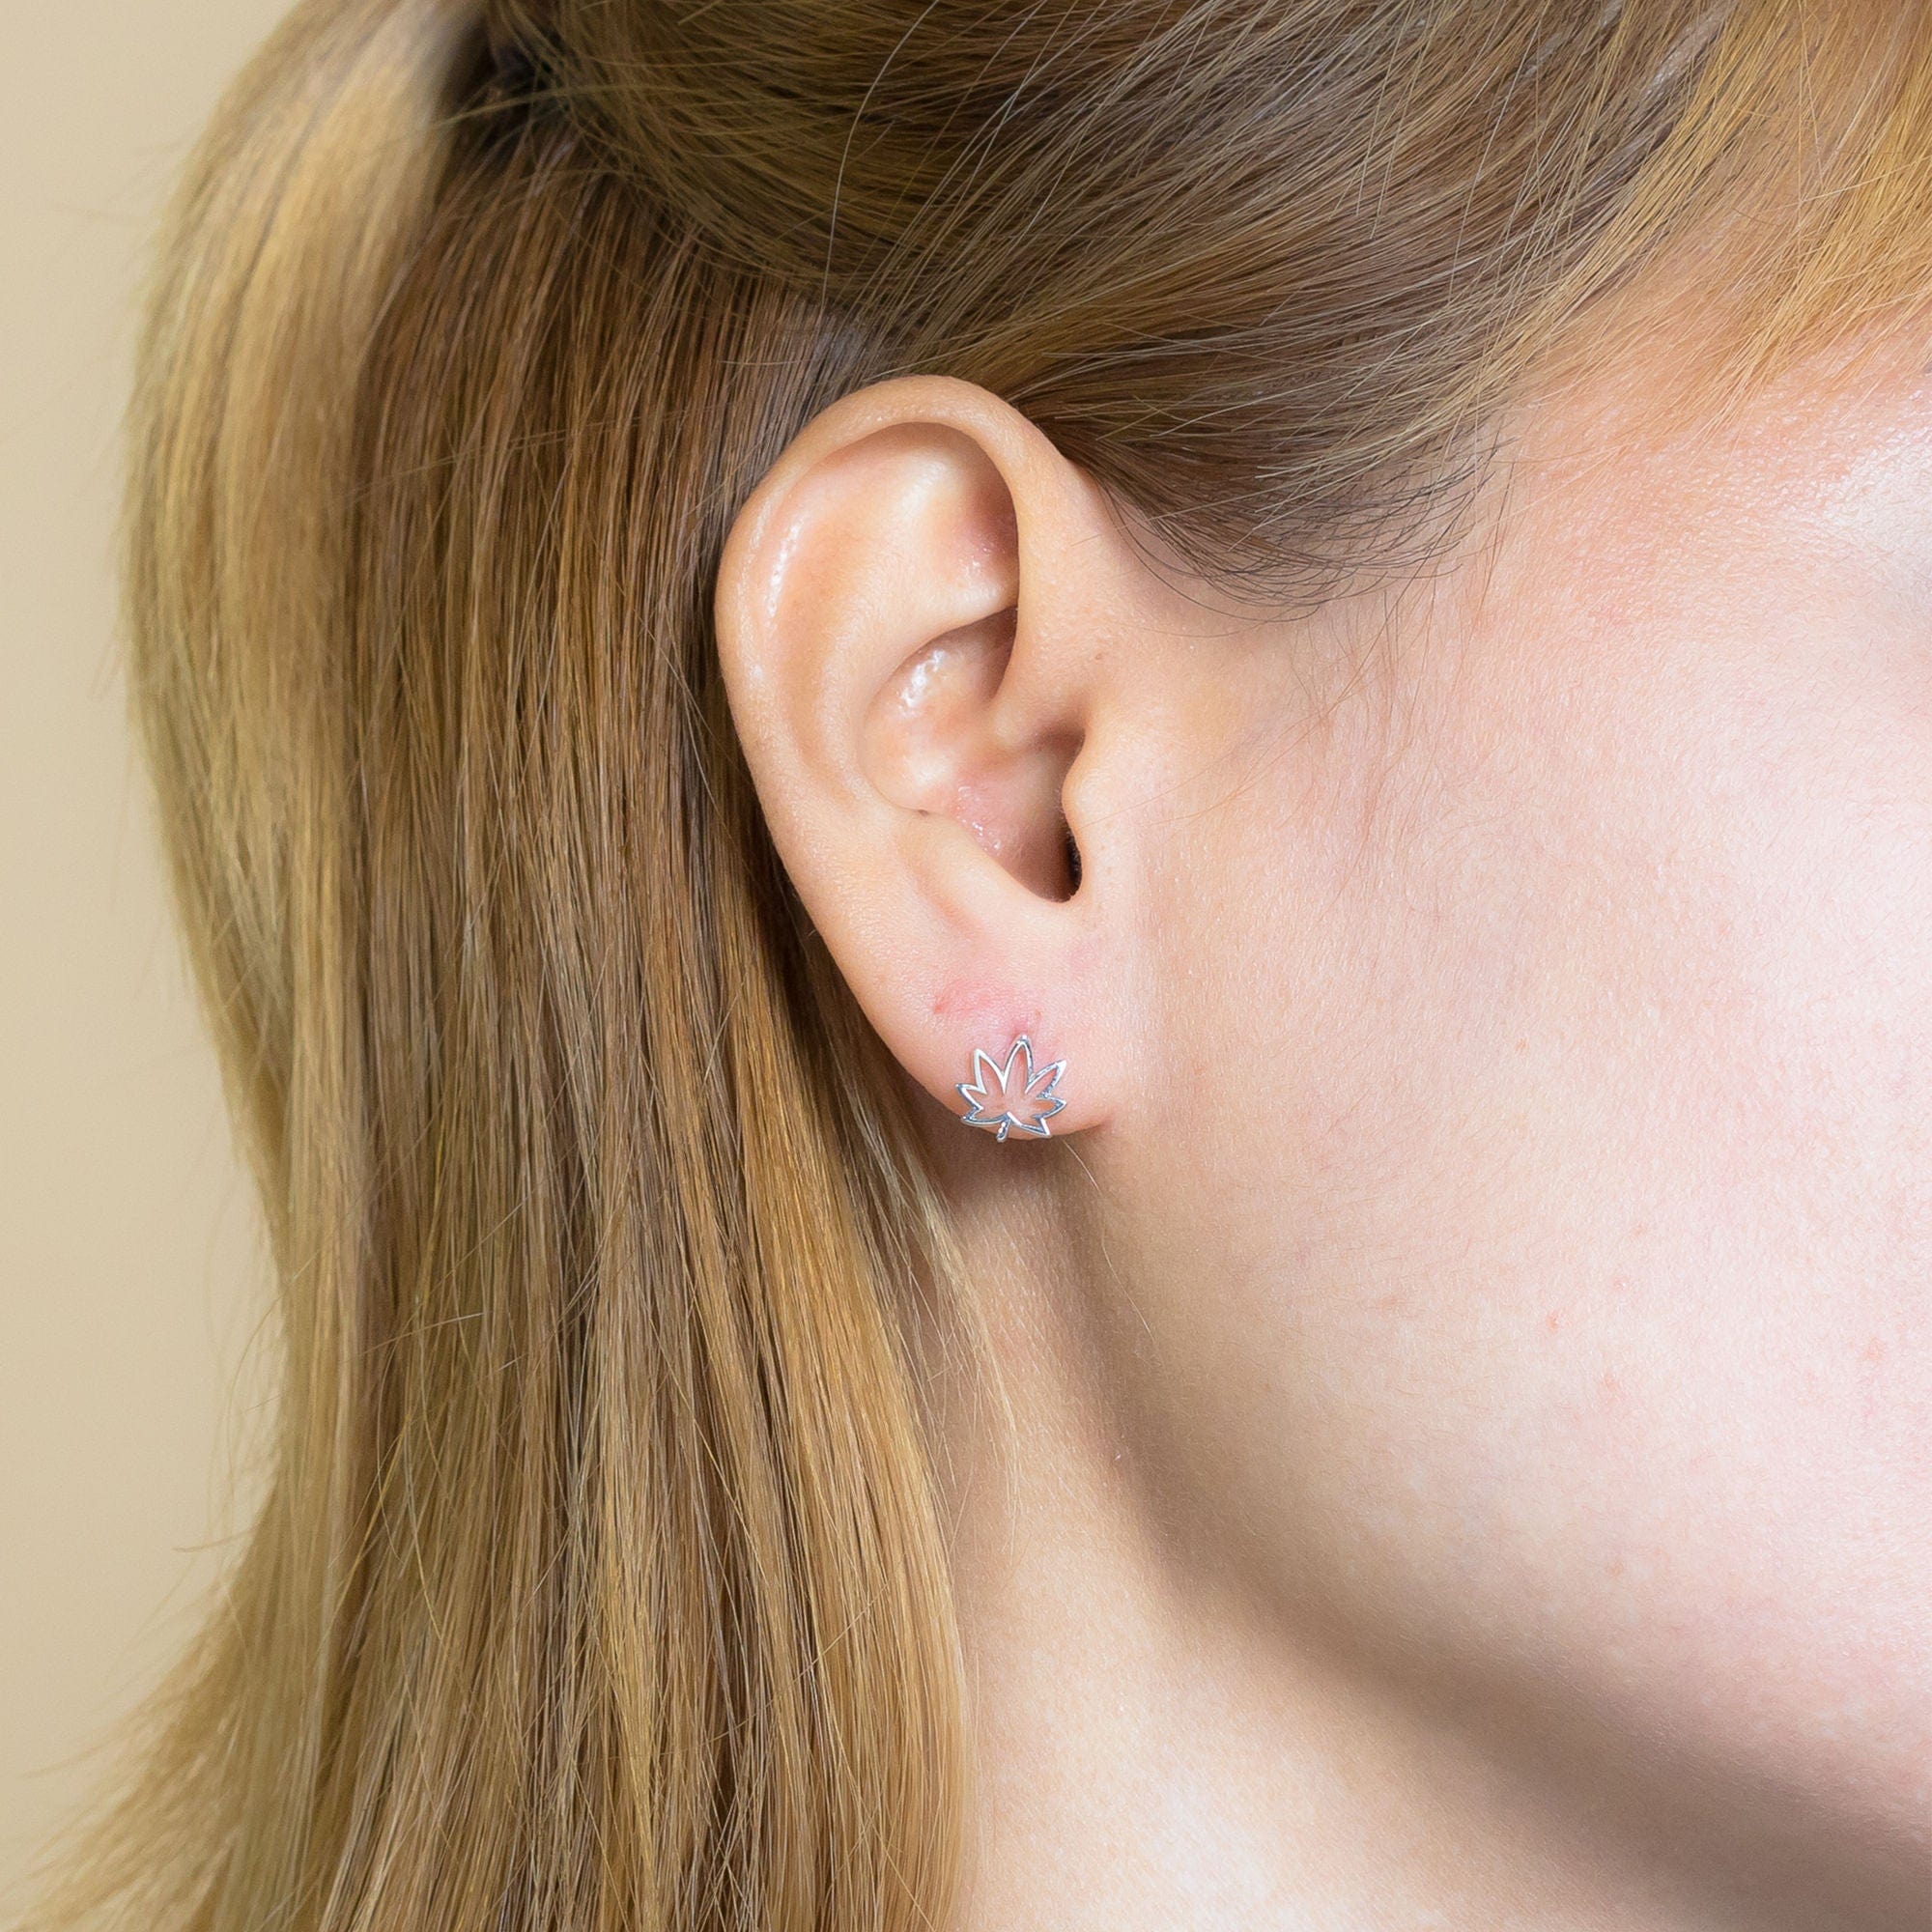 Boma Jewelry Earrings Open Maple Leaf Stud Earrings